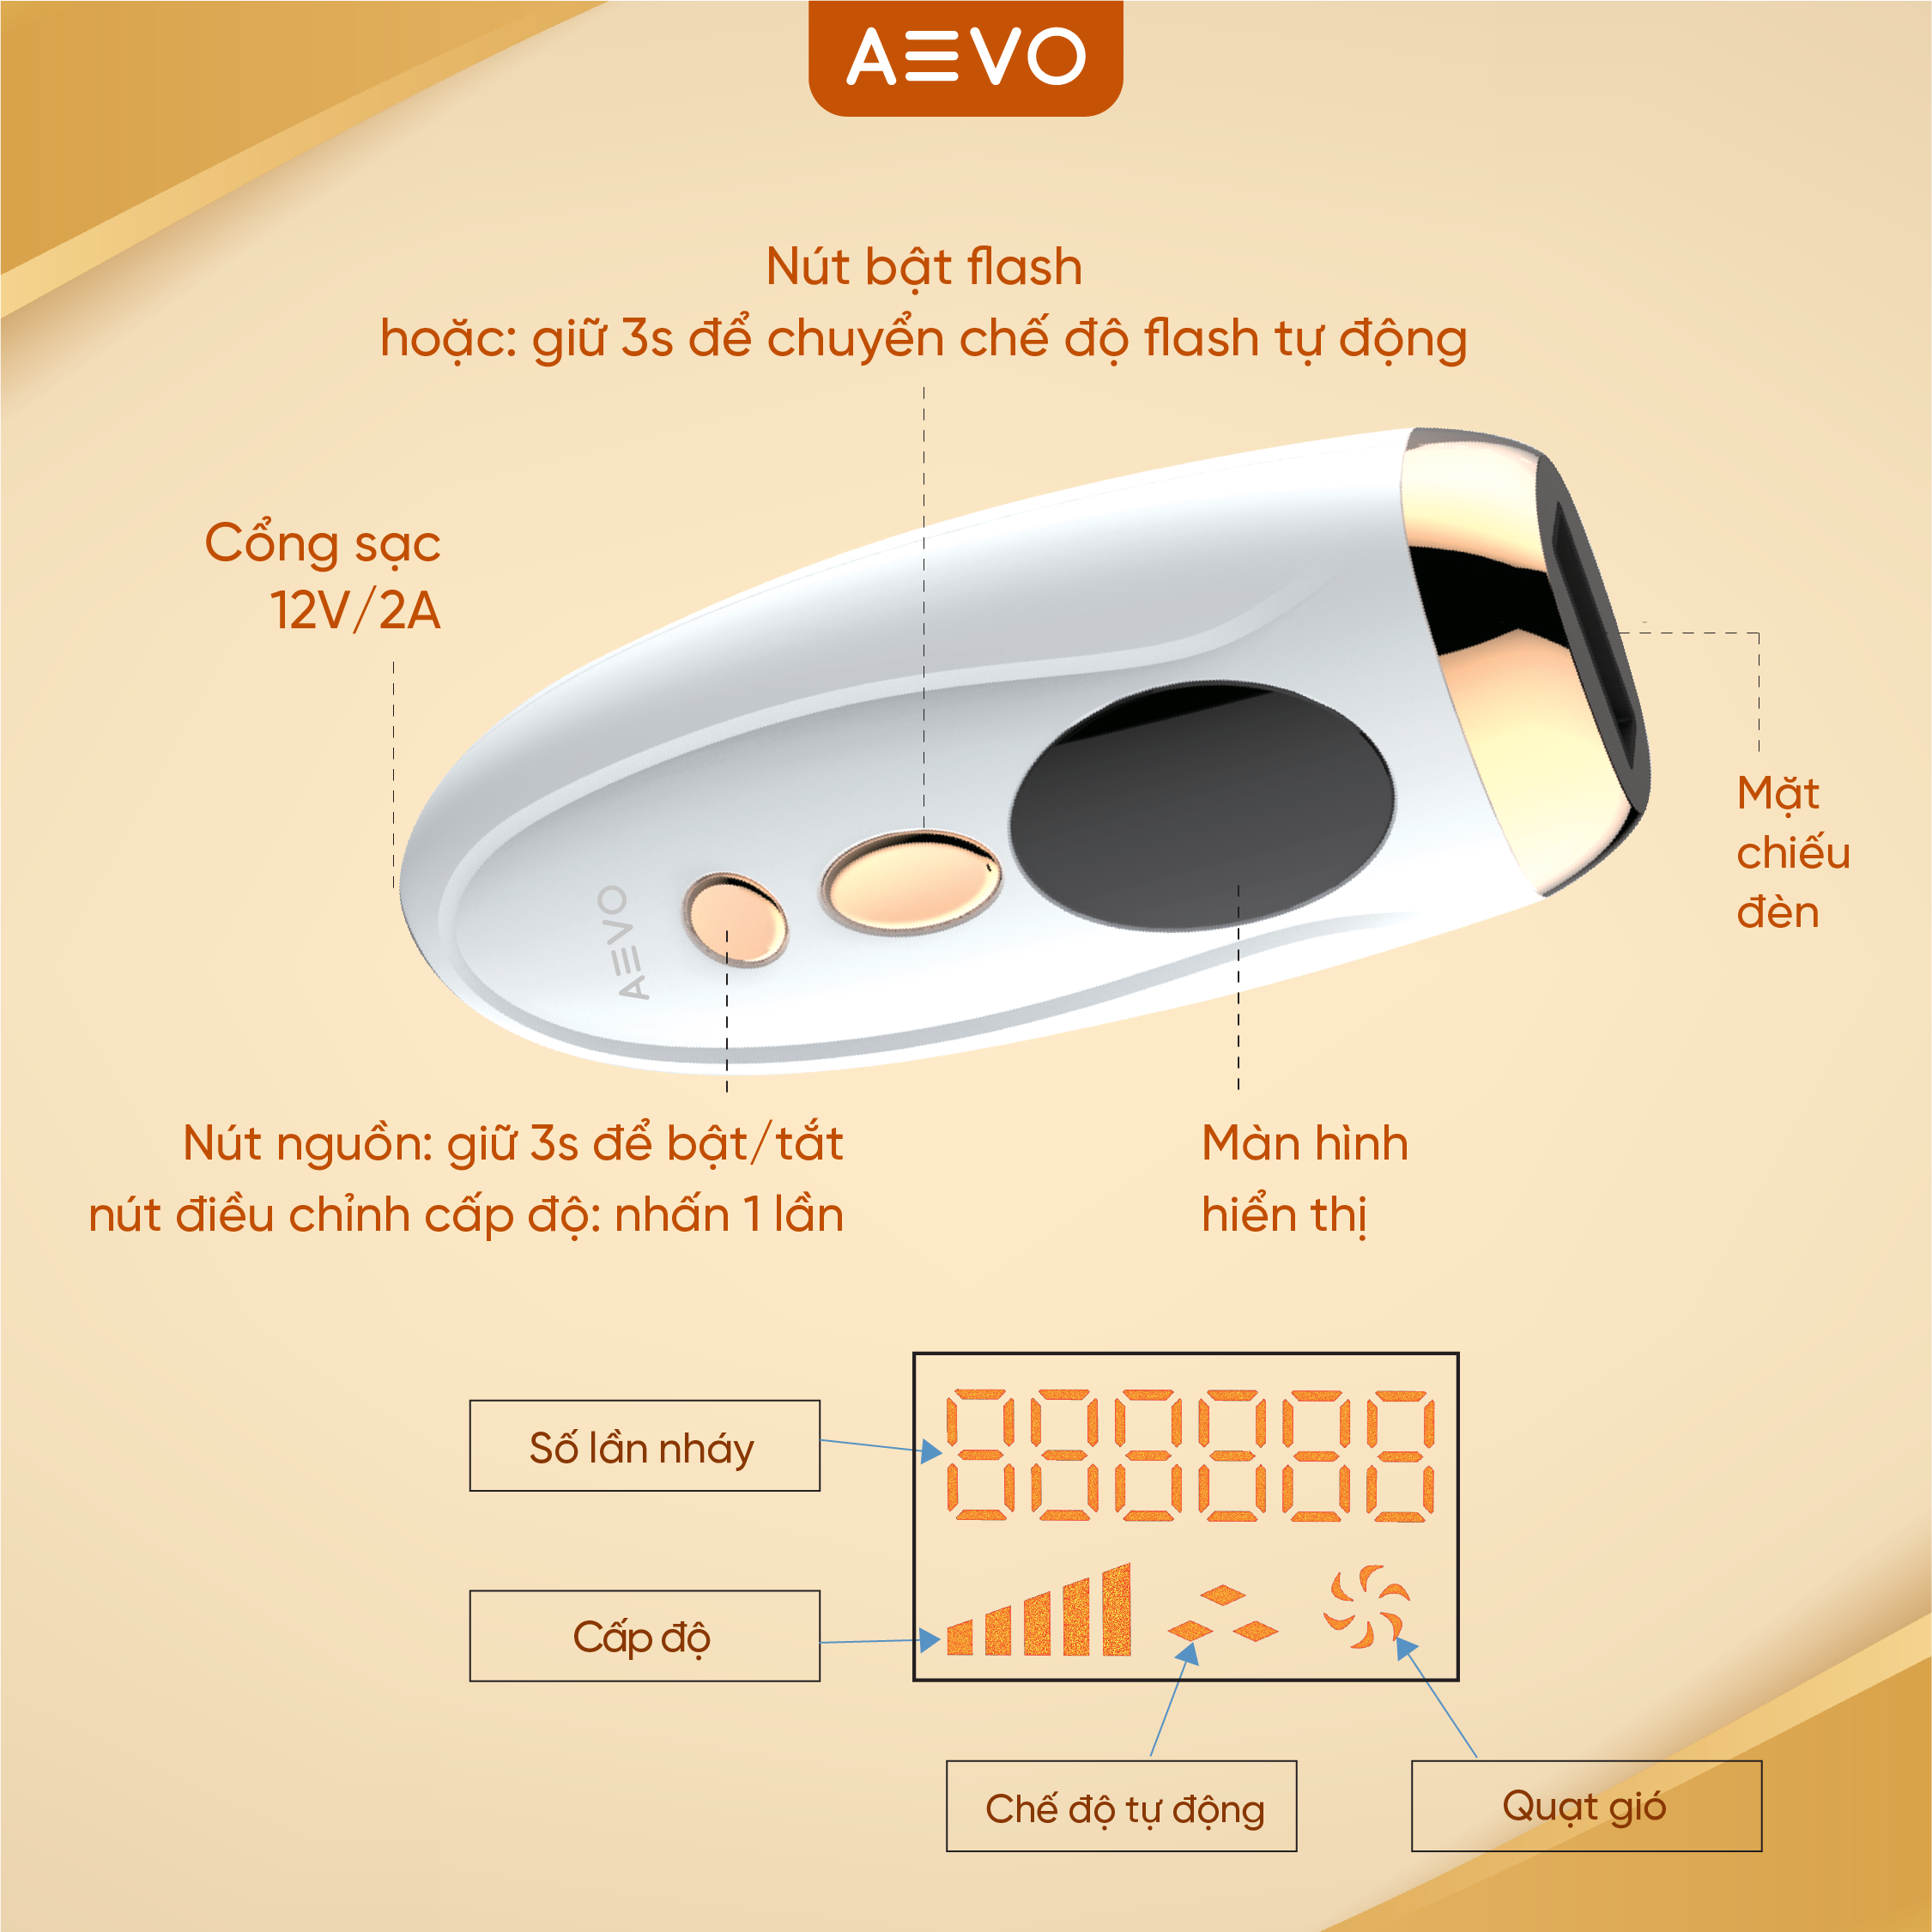 Máy Máy Triệt Lông AEVO Hair Removal Handset Triệt Lông Vĩnh Viễn Đơn Giản Tại Nhà [Bảo hành 12 tháng]